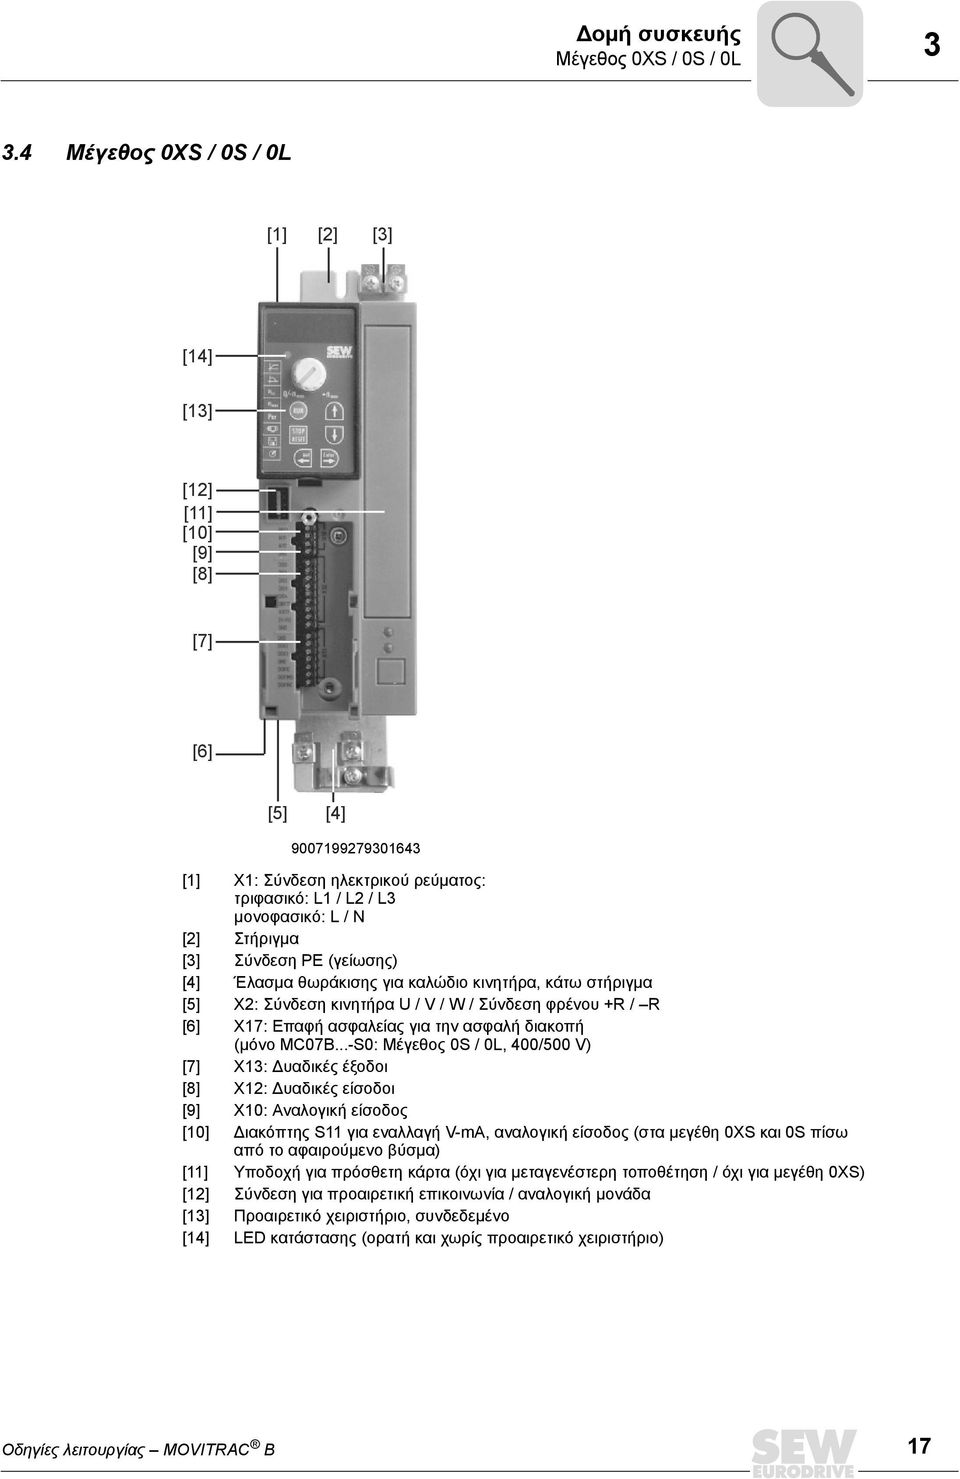 Σύνδεση PΕ (γείωσης) [4] Έλασμα θωράκισης για καλώδιο κινητήρα, κάτω στήριγμα [5] X2: Σύνδεση κινητήρα U / V / W / Σύνδεση φρένου +R / R [6] X17: Επαφή ασφαλείας για την ασφαλή διακοπή (μόνο MC07B.